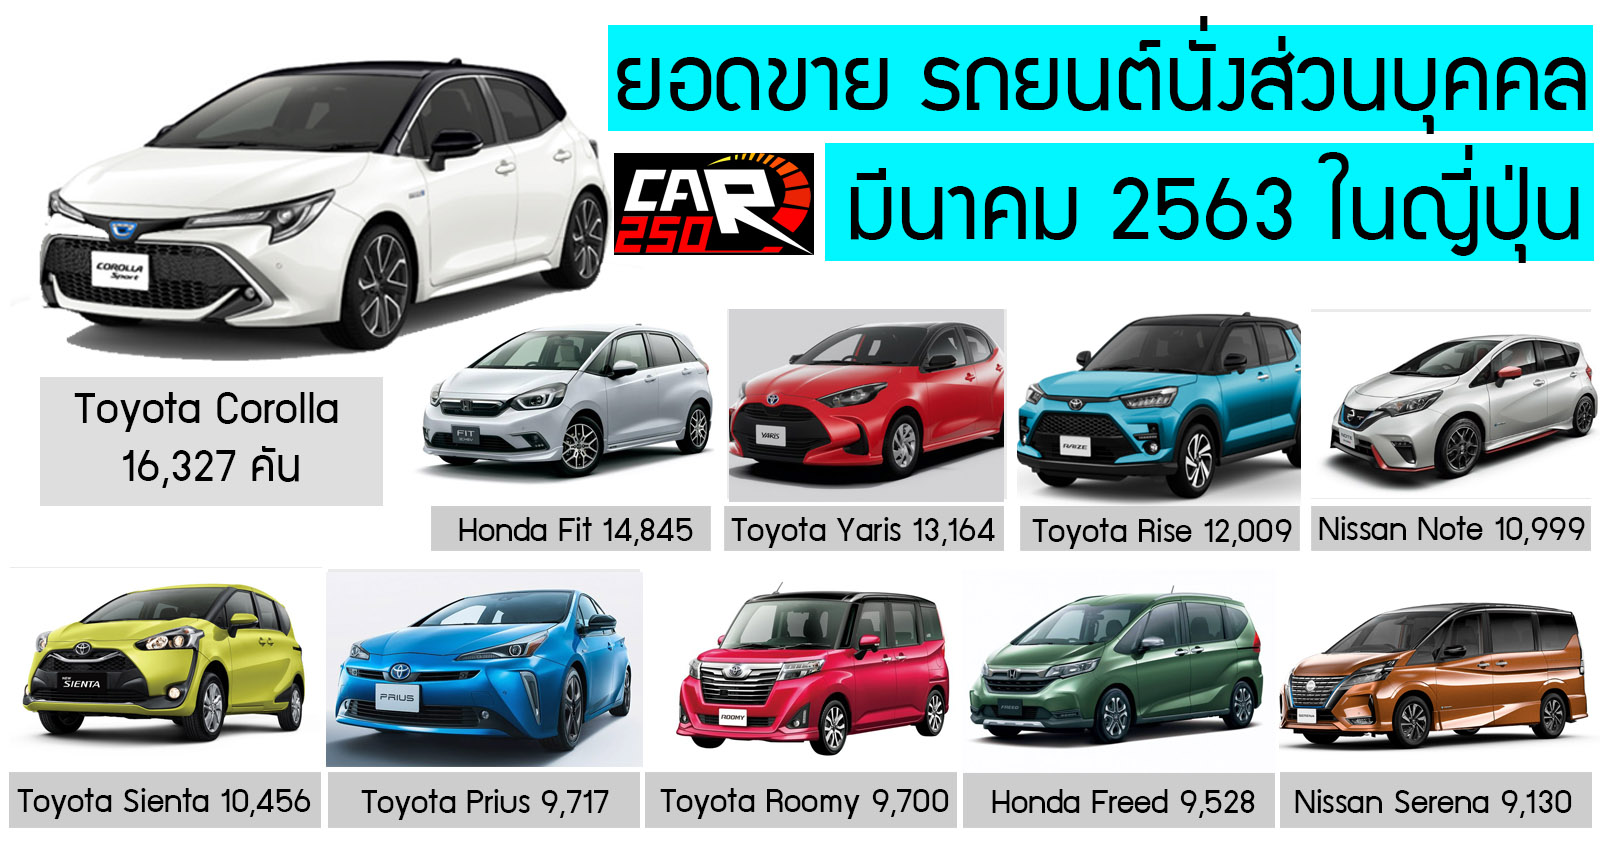 ยอดขาย รถยนต์นั่งส่วนบุคคล มีนาคม 2563 ในญี่ปุ่น